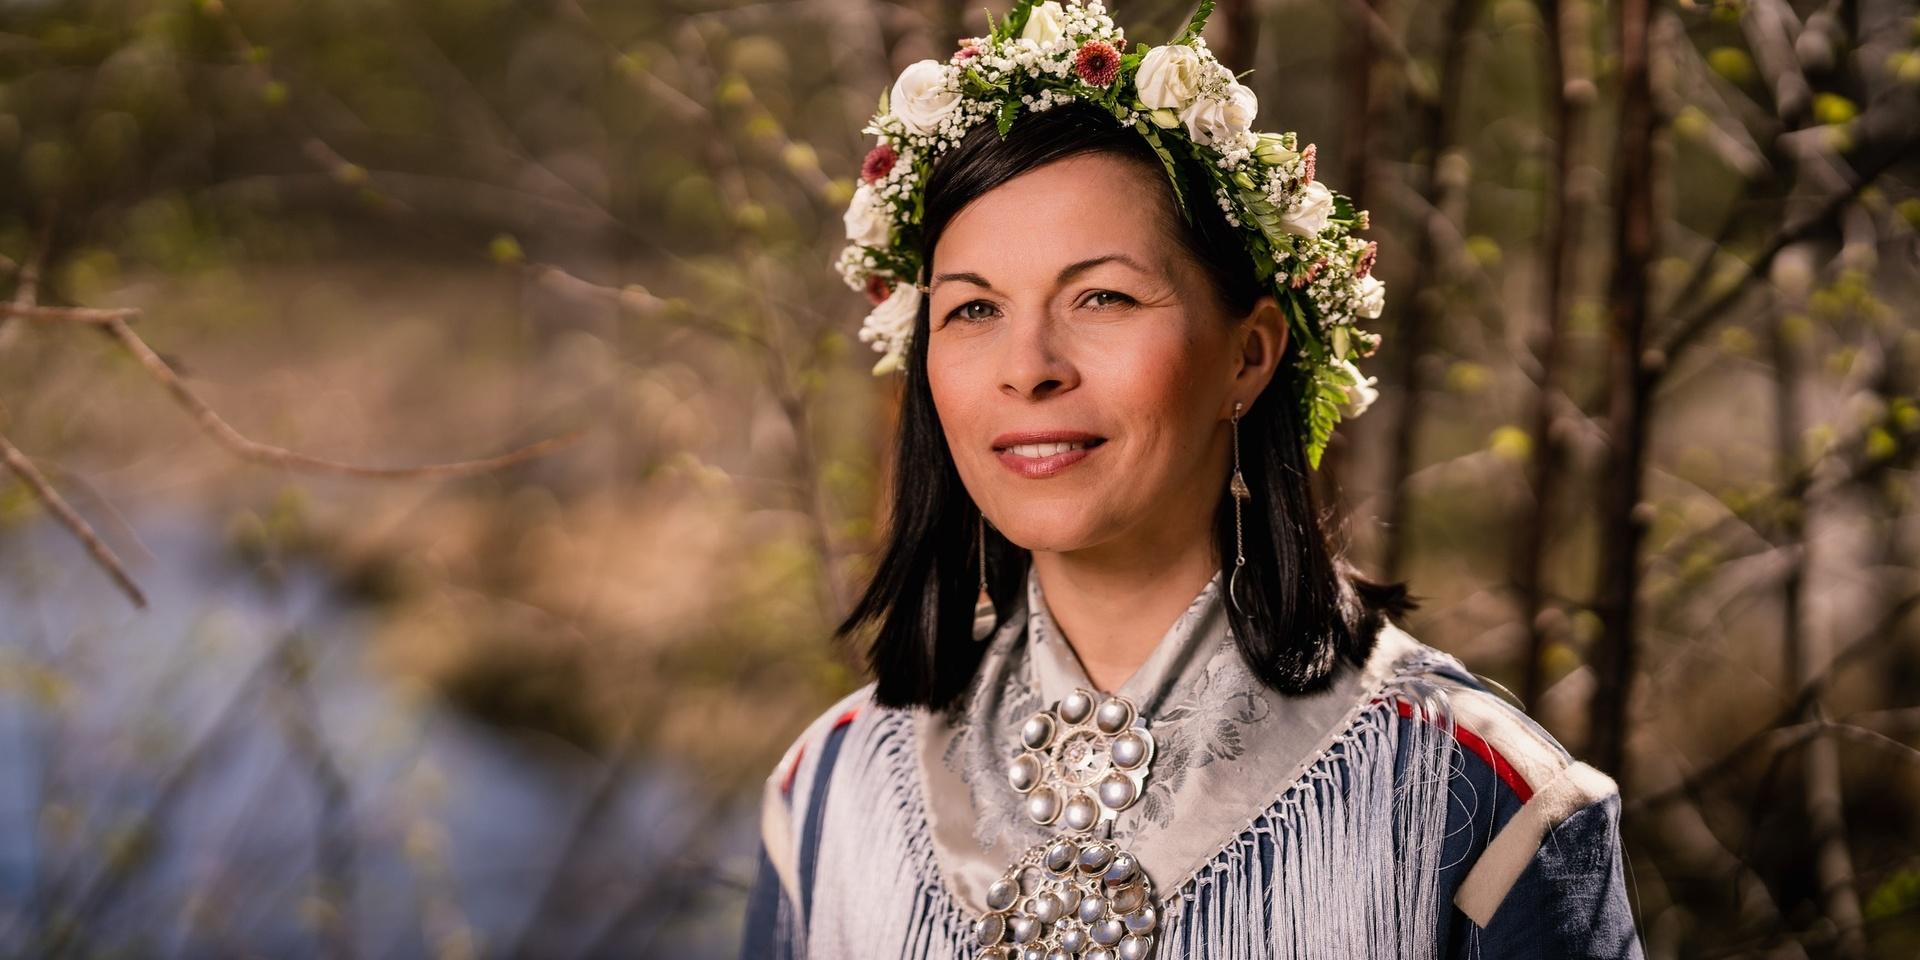 Författaren Elin Anna Labbas sommarprat i P1 handlar om att förlora det samiska språket genom generationer – och återvinna det. 